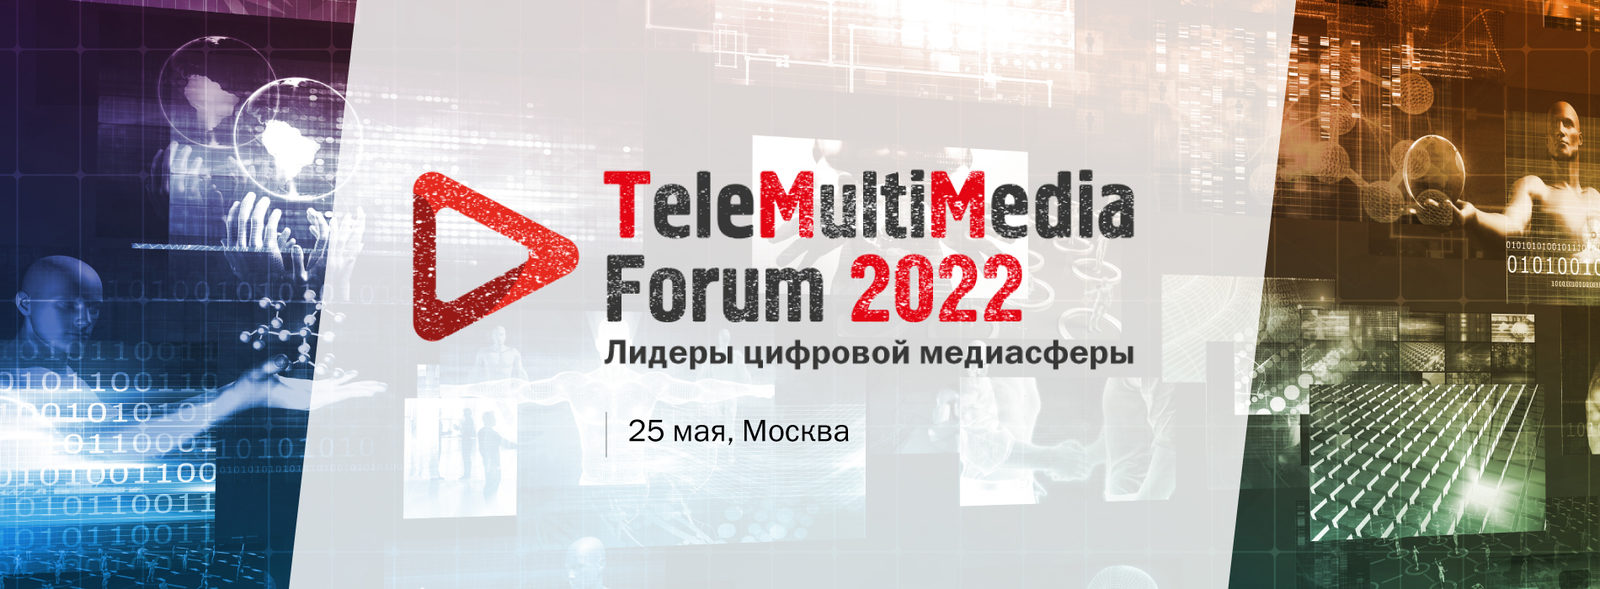 Изменения в российском медиапотреблении обсудят на TeleMultiMedia Forum